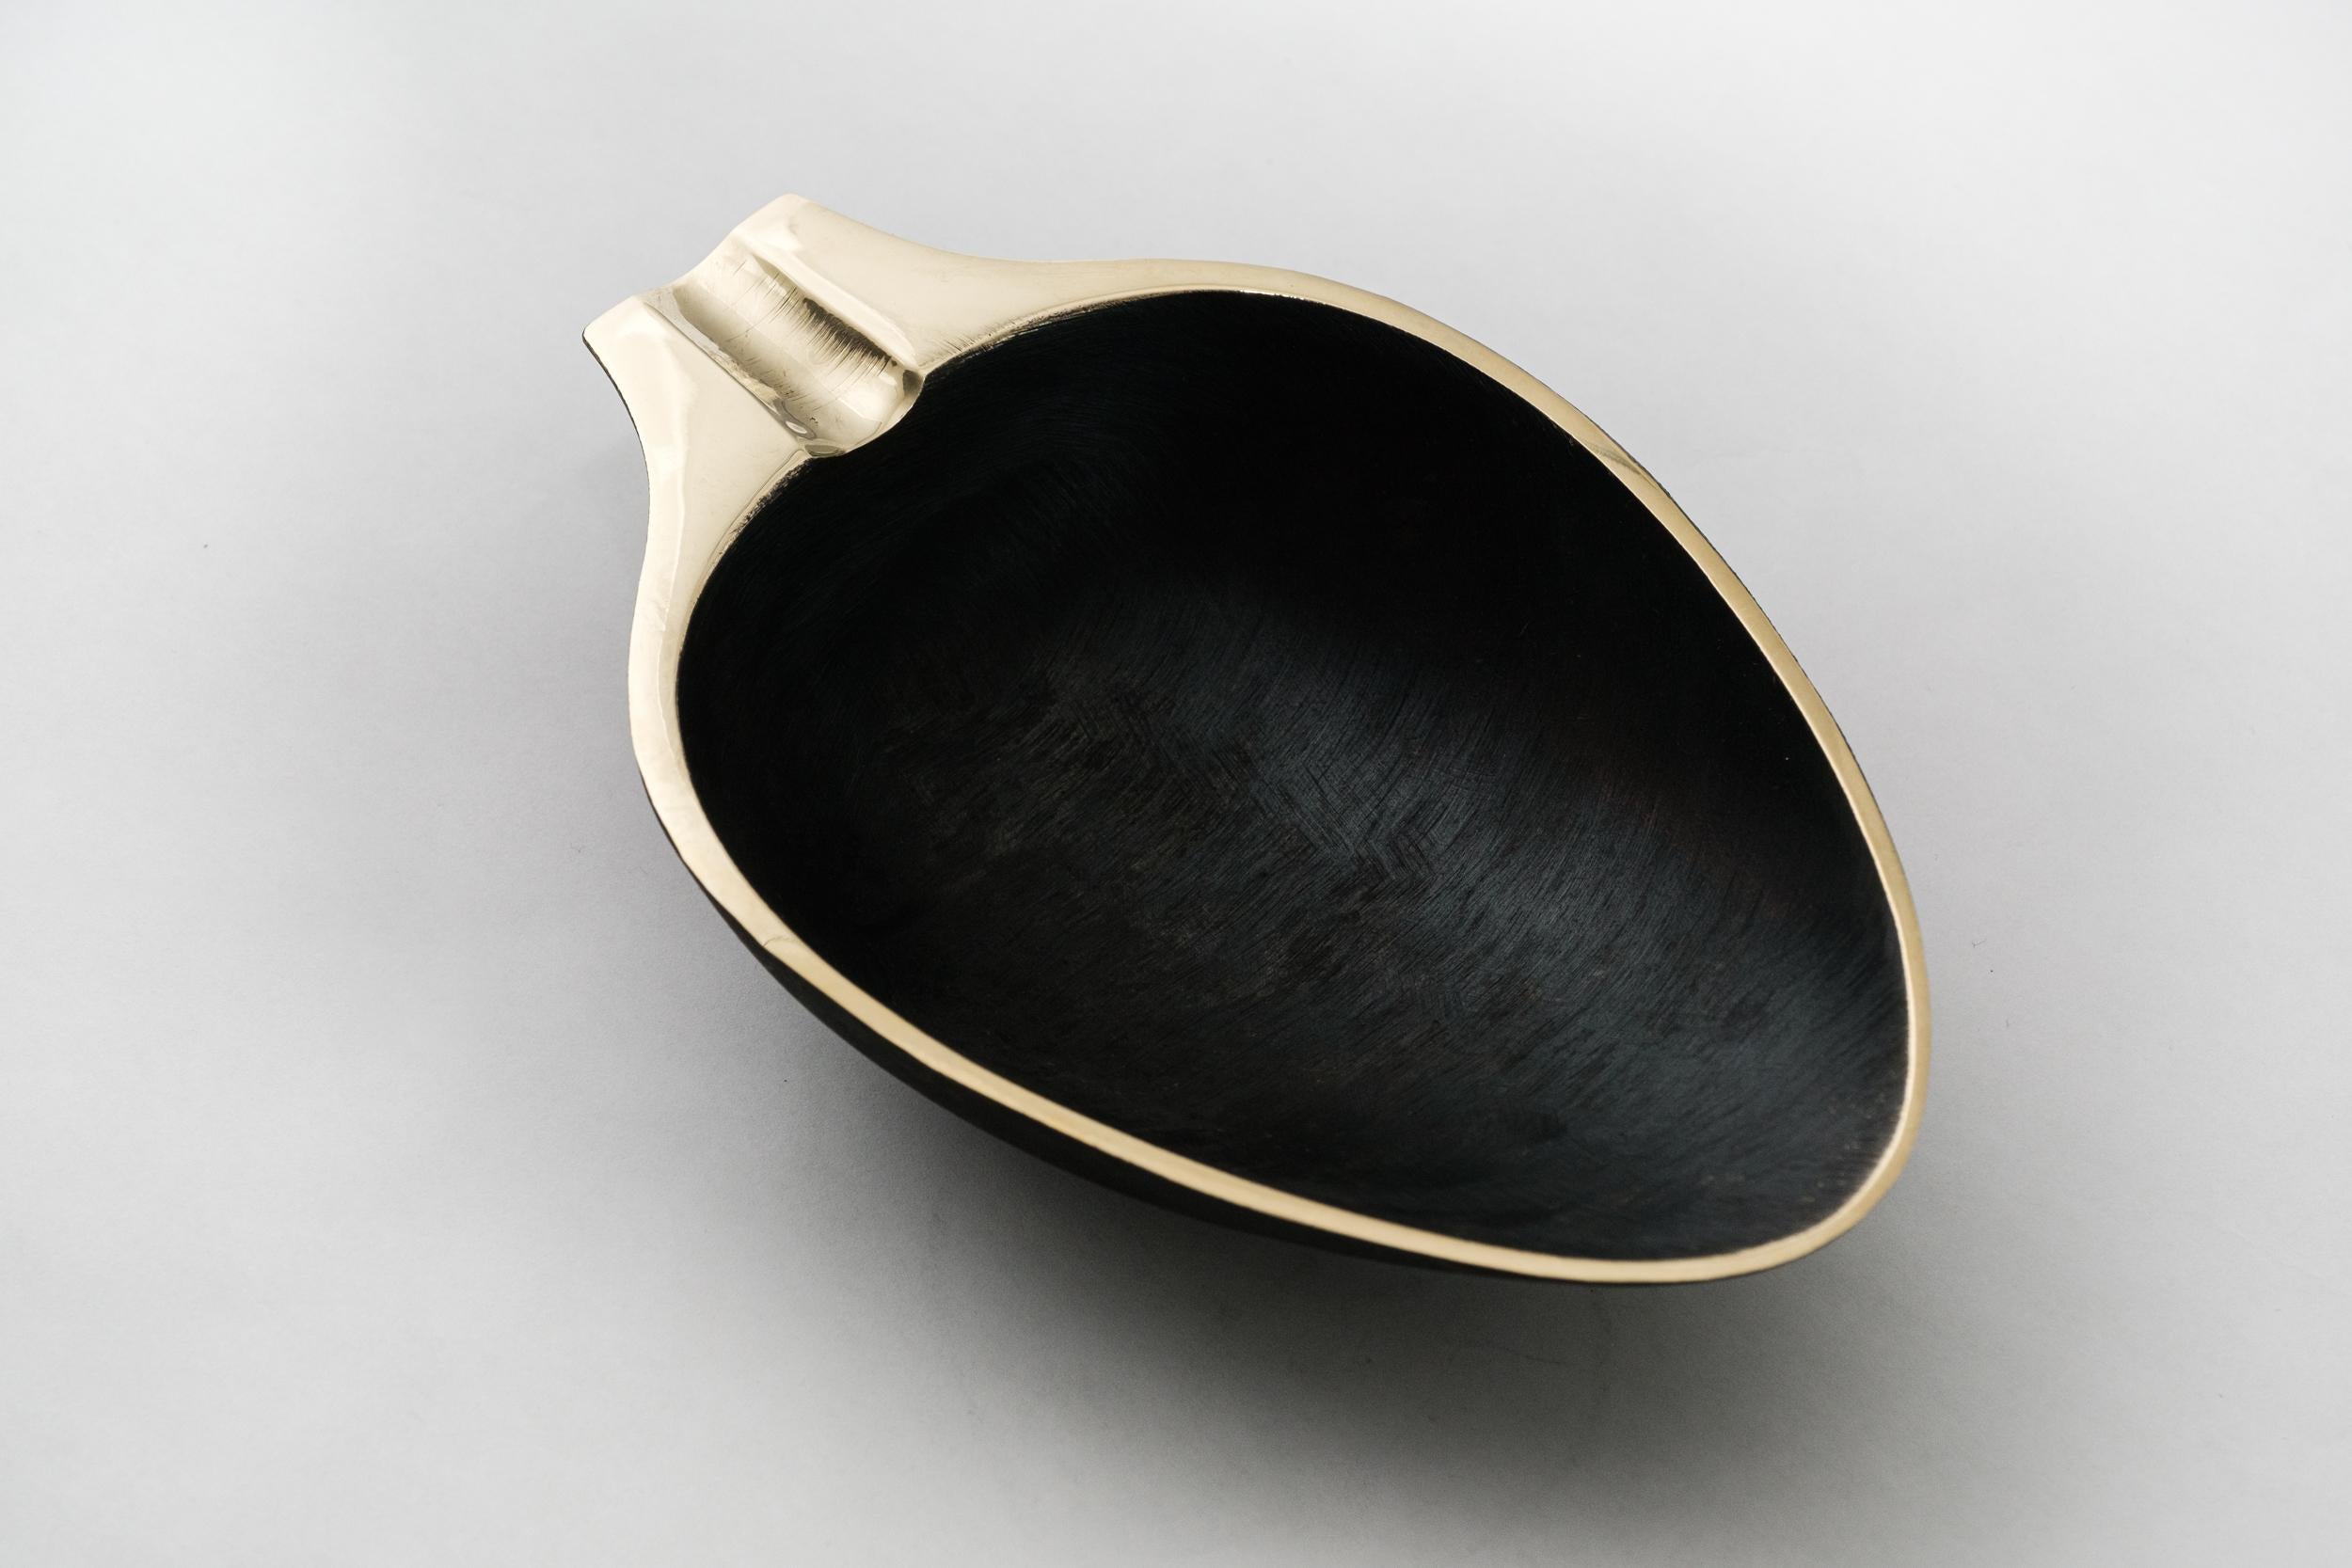 Carl Aubo¨ck Modèle #3548 bol en laiton patiné. Conçu dans les années 1950, ce bol viennois sculptural et incroyablement raffiné est réalisé en laiton poli avec une patine foncée. Conçu à l'origine pour servir de cendrier, ce récipient décoratif